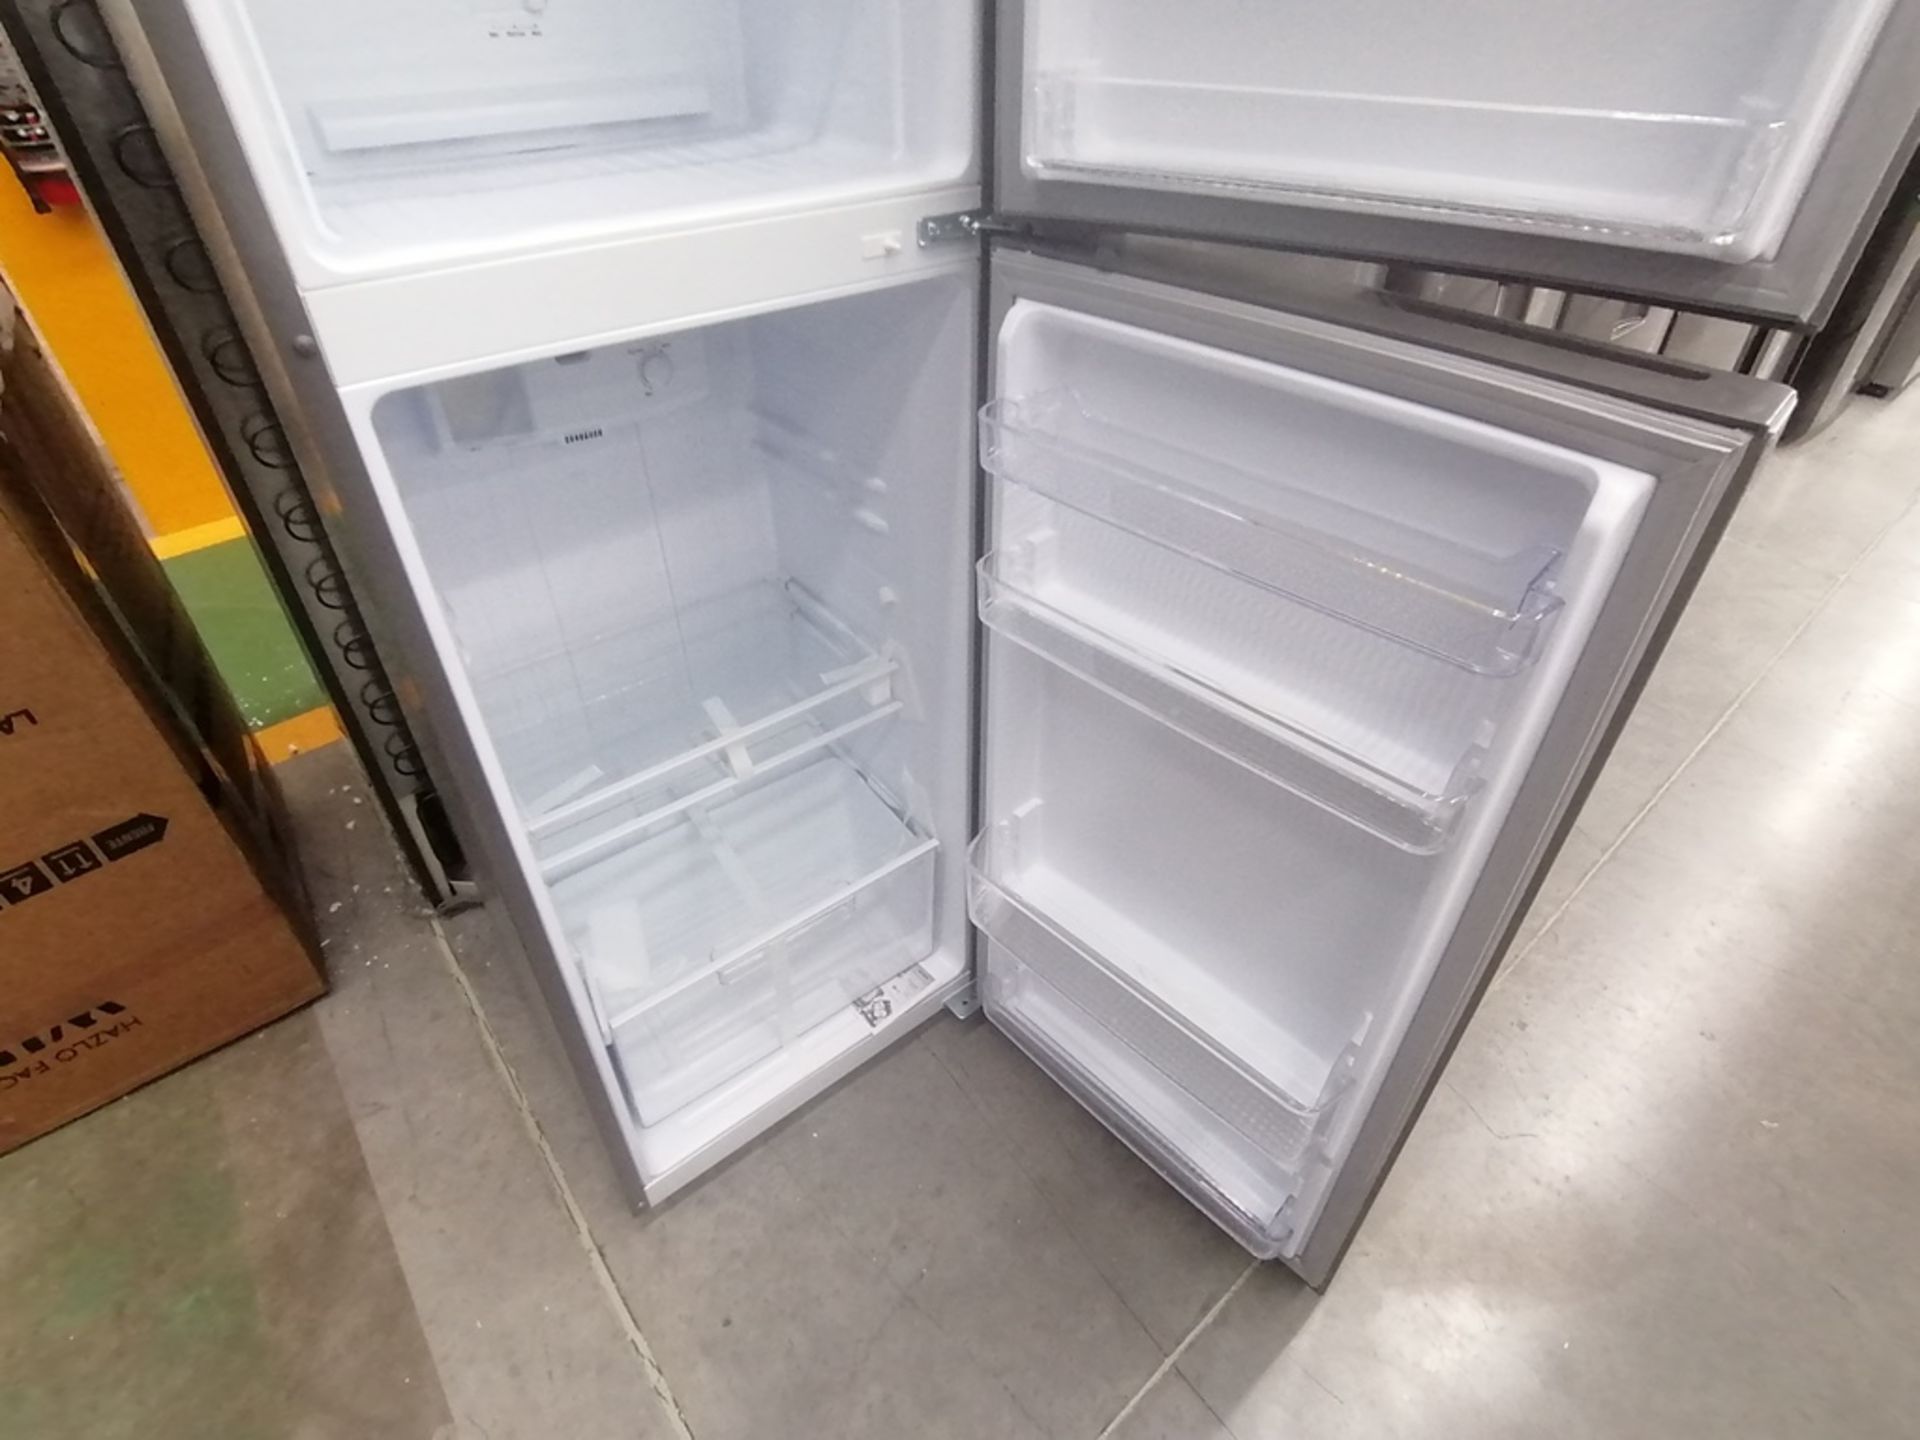 Lote de 2 refrigeradores incluye: 1 Refrigerador con dispensador de agua, Marca Whirlpool, Modelo W - Image 14 of 15